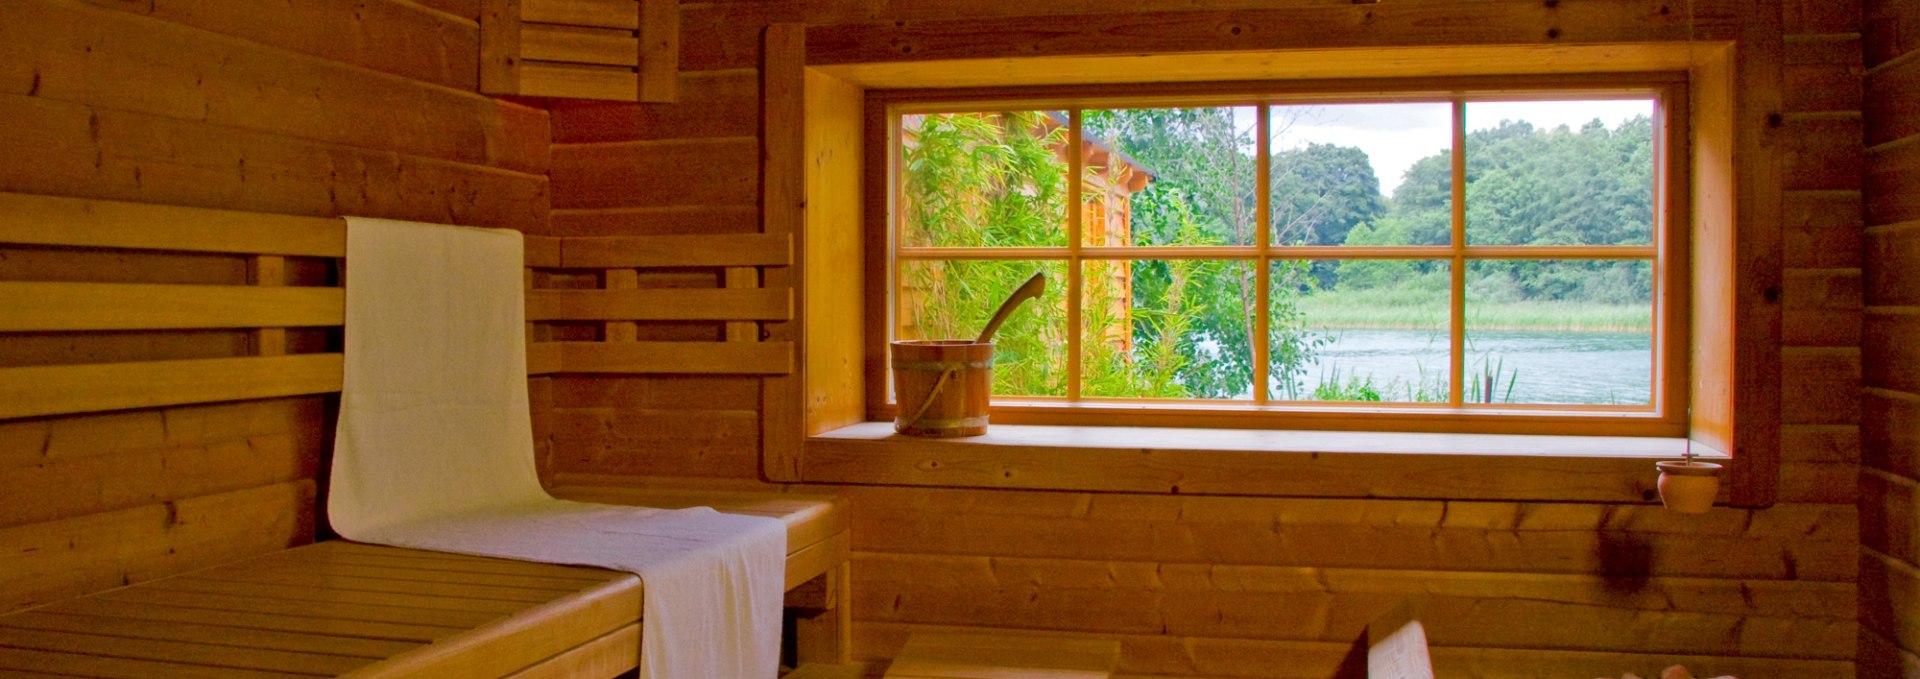 Sauna view, © Altes Zollhaus